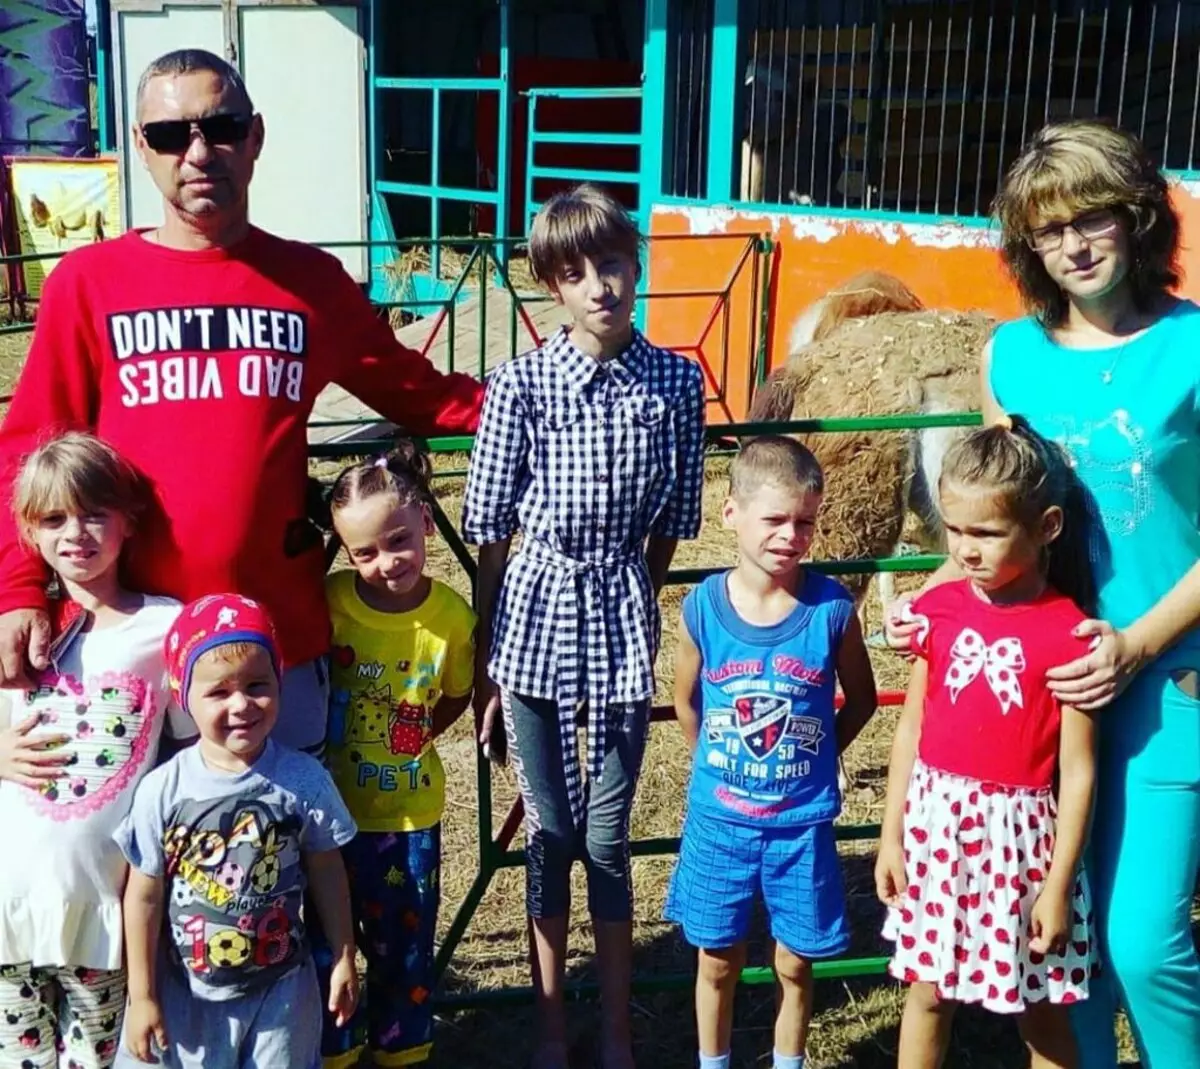 في منطقة إيفانوفو، ترغب سلطات الوصاية في إزالة 7 أطفال من الأب البالغ من العمر 47 عاما